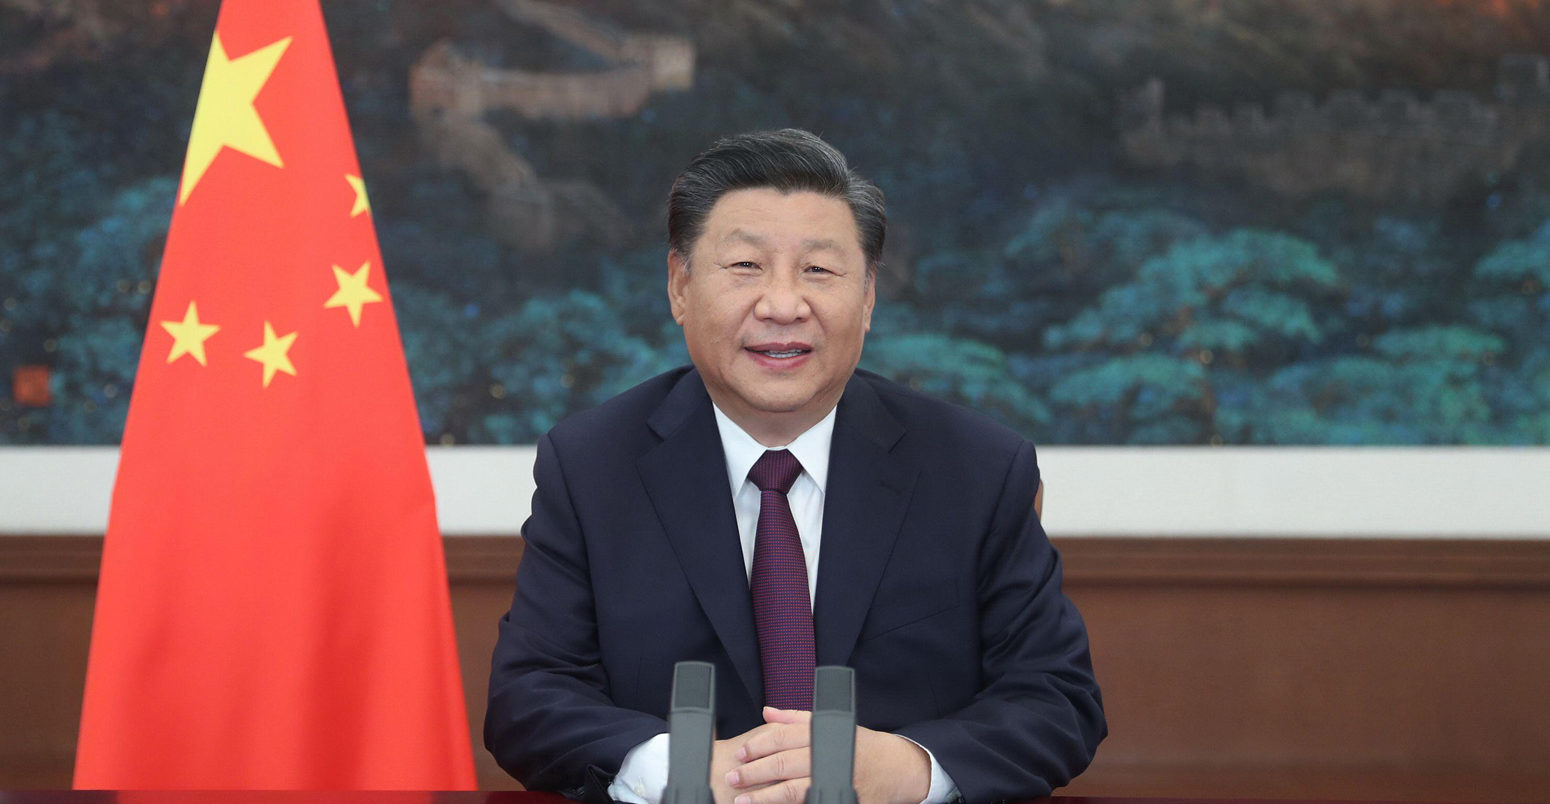 中国国家主席习金平解决了全球服务峰会贸易。